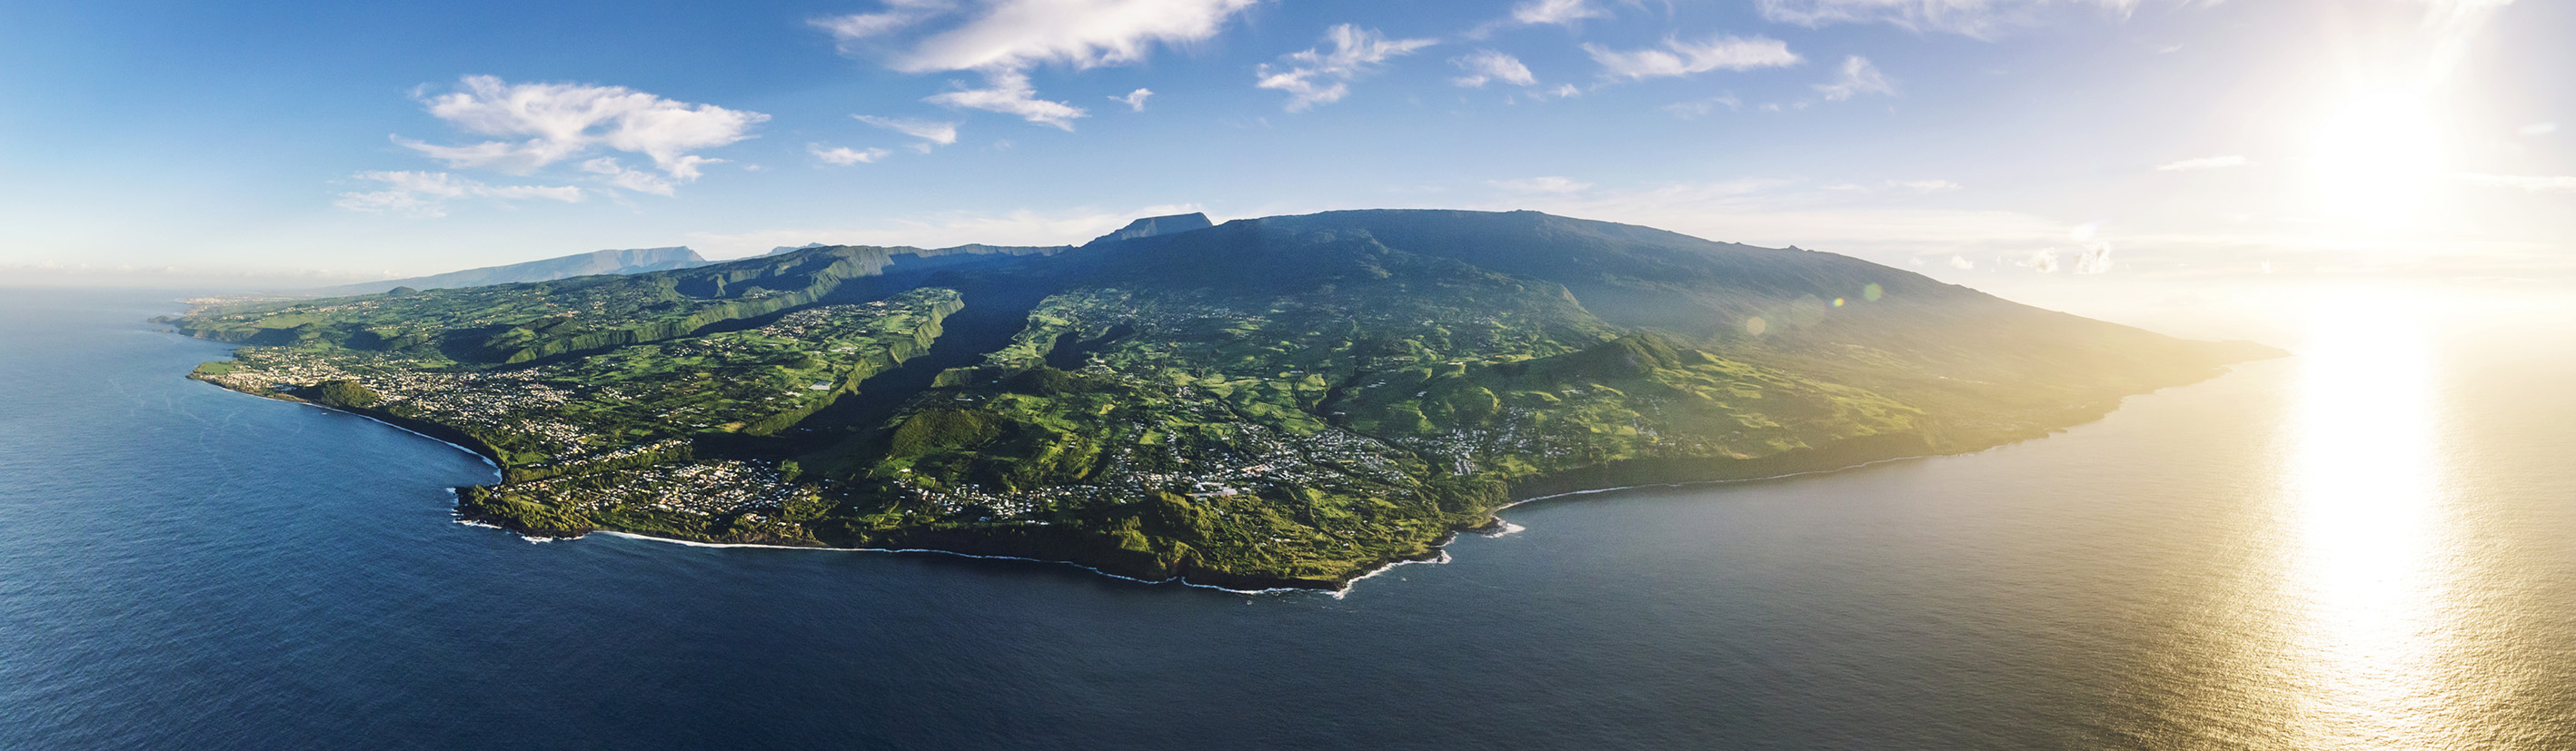 La Réunion : 6 lieux préservés à explorer sur l'île intense